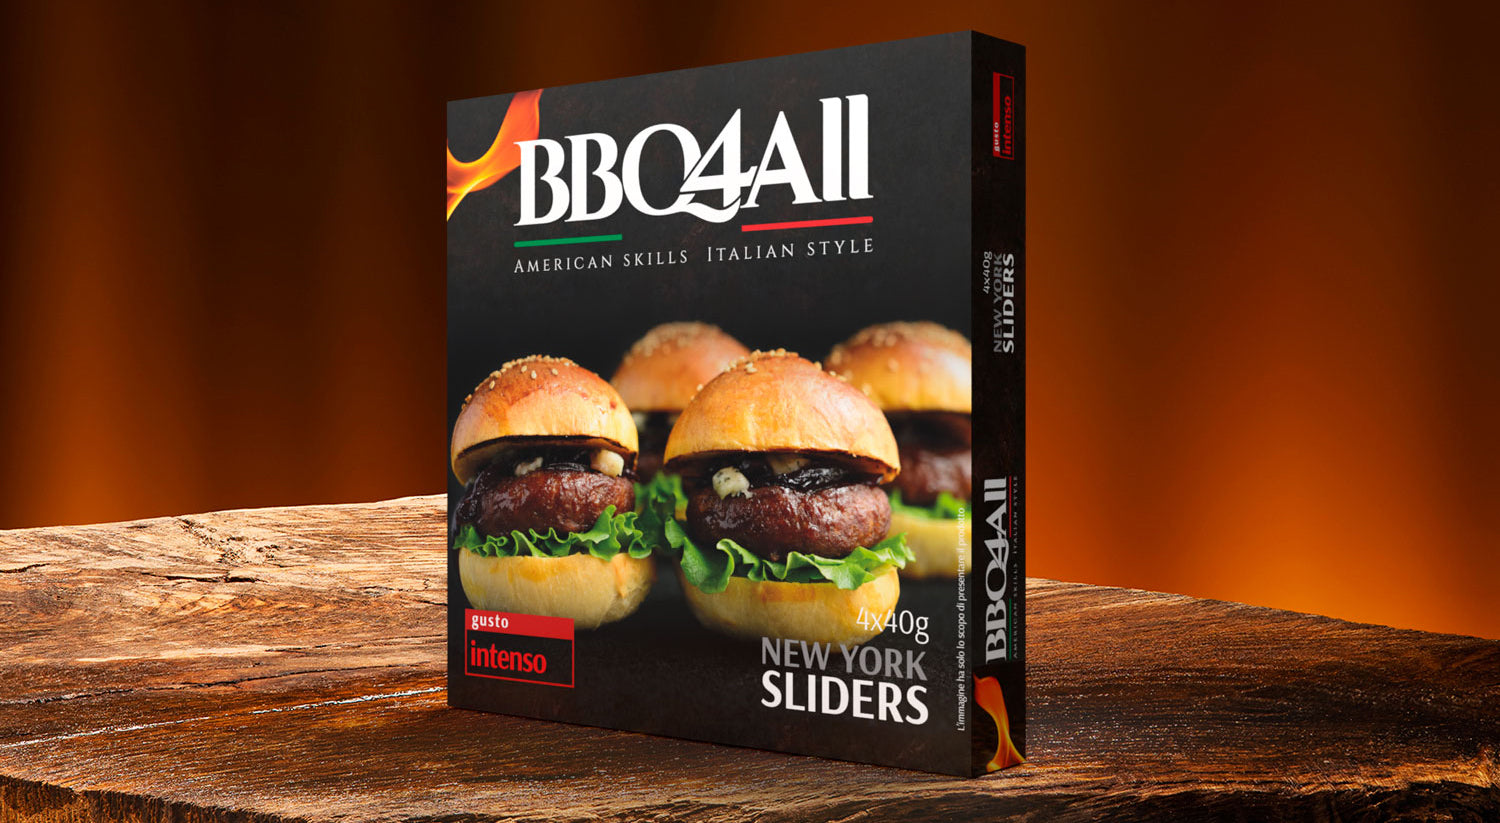 BBQ4All New York Sliders - Special Pack 6 confezioni con 4 sliders da 40g l'uno